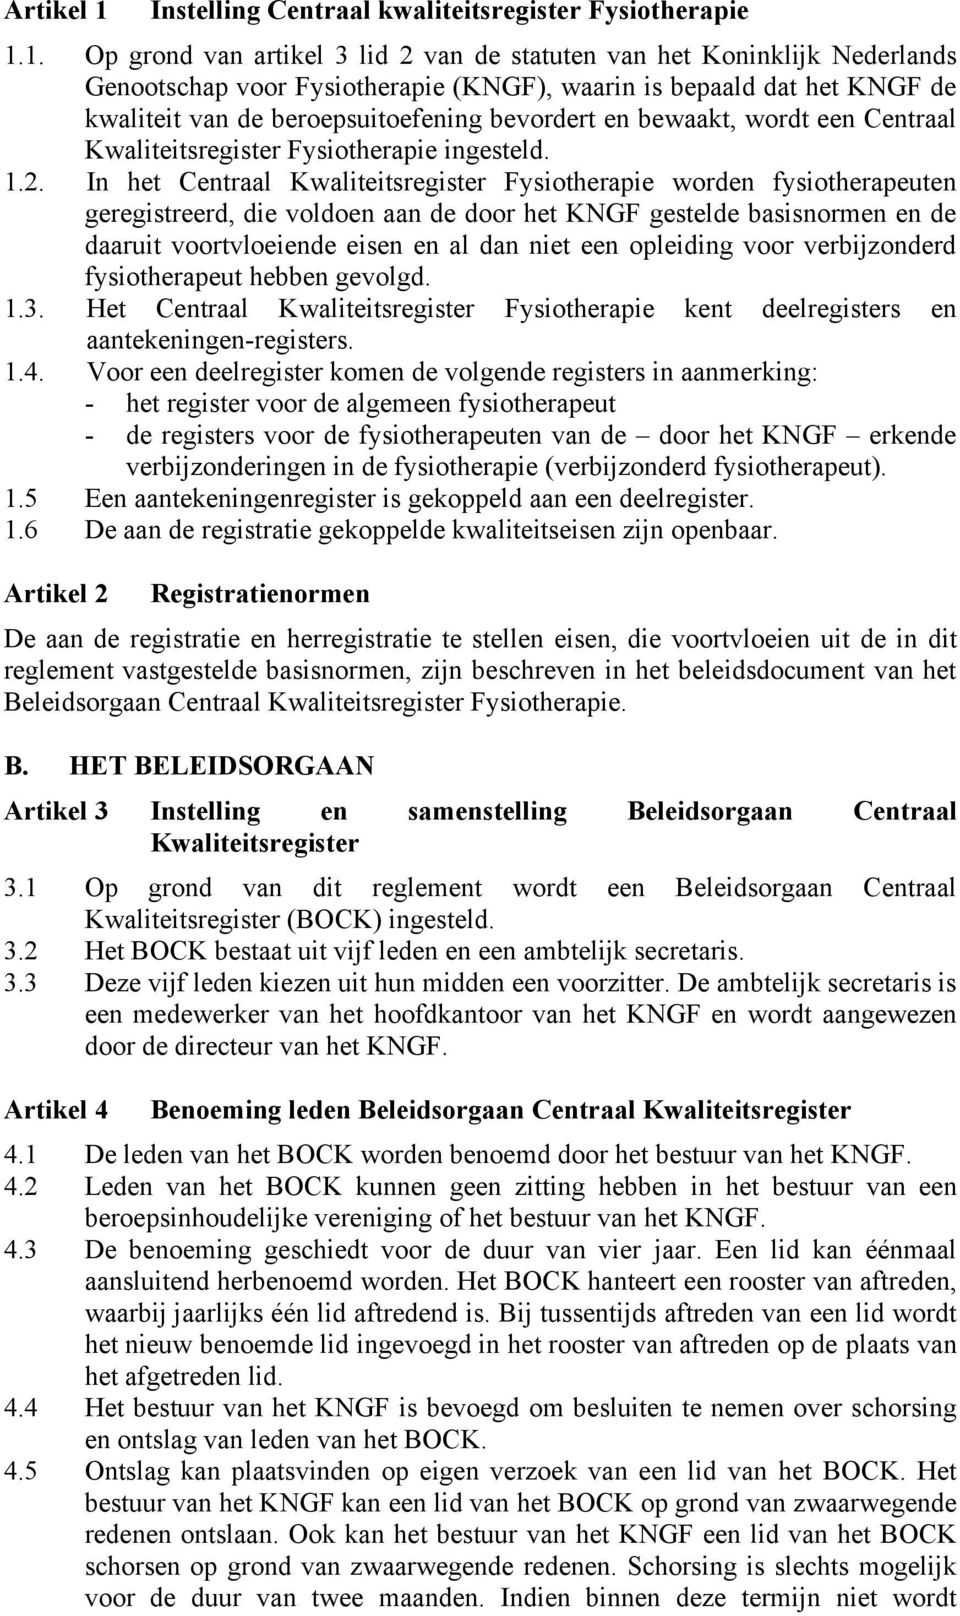 1. Op grond van artikel 3 lid 2 van de statuten van het Koninklijk Nederlands Genootschap voor Fysiotherapie (KNGF), waarin is bepaald dat het KNGF de kwaliteit van de beroepsuitoefening bevordert en